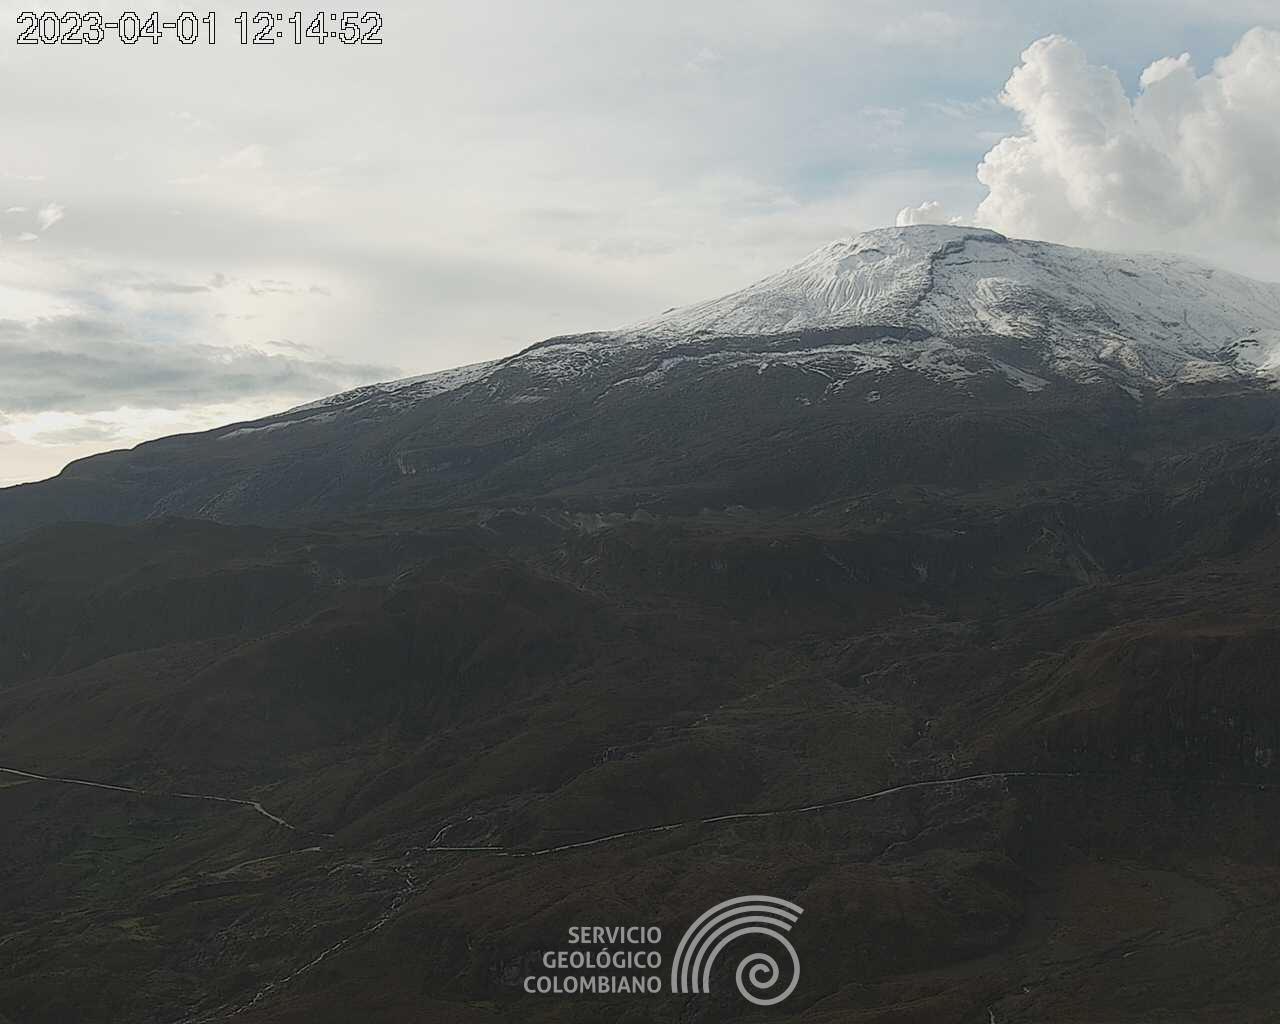 Alerta Naranja en el volcán Nevado del Ruiz continúa activa 6